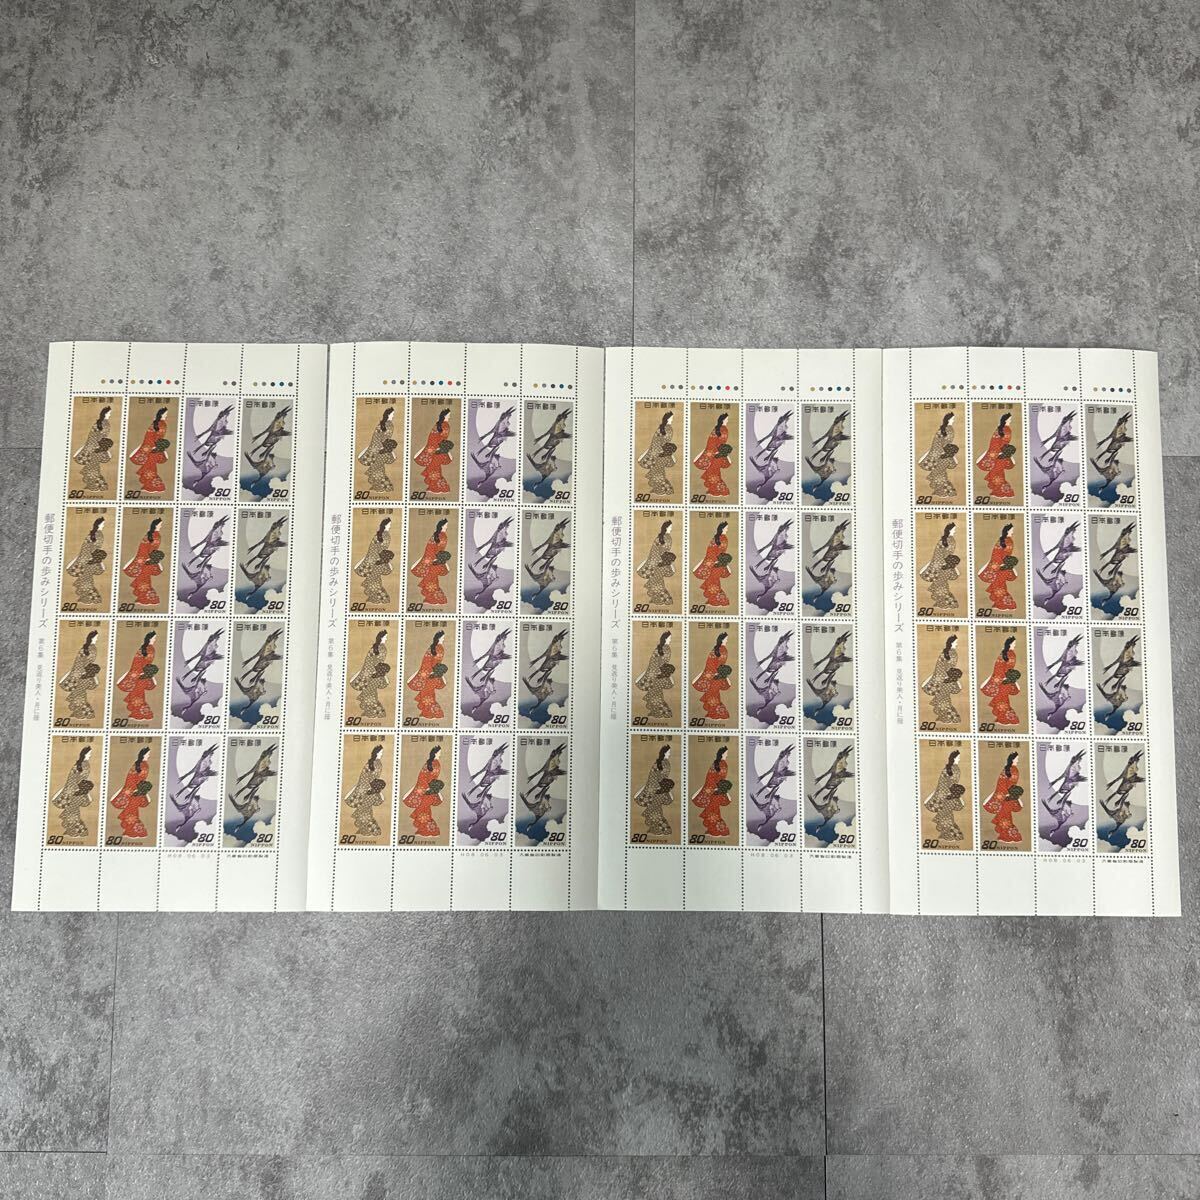 未使用品 記念切手 郵便切手の歩みシリーズ 第6集 見返り美人 月に雁 切手シート 4セットの画像1